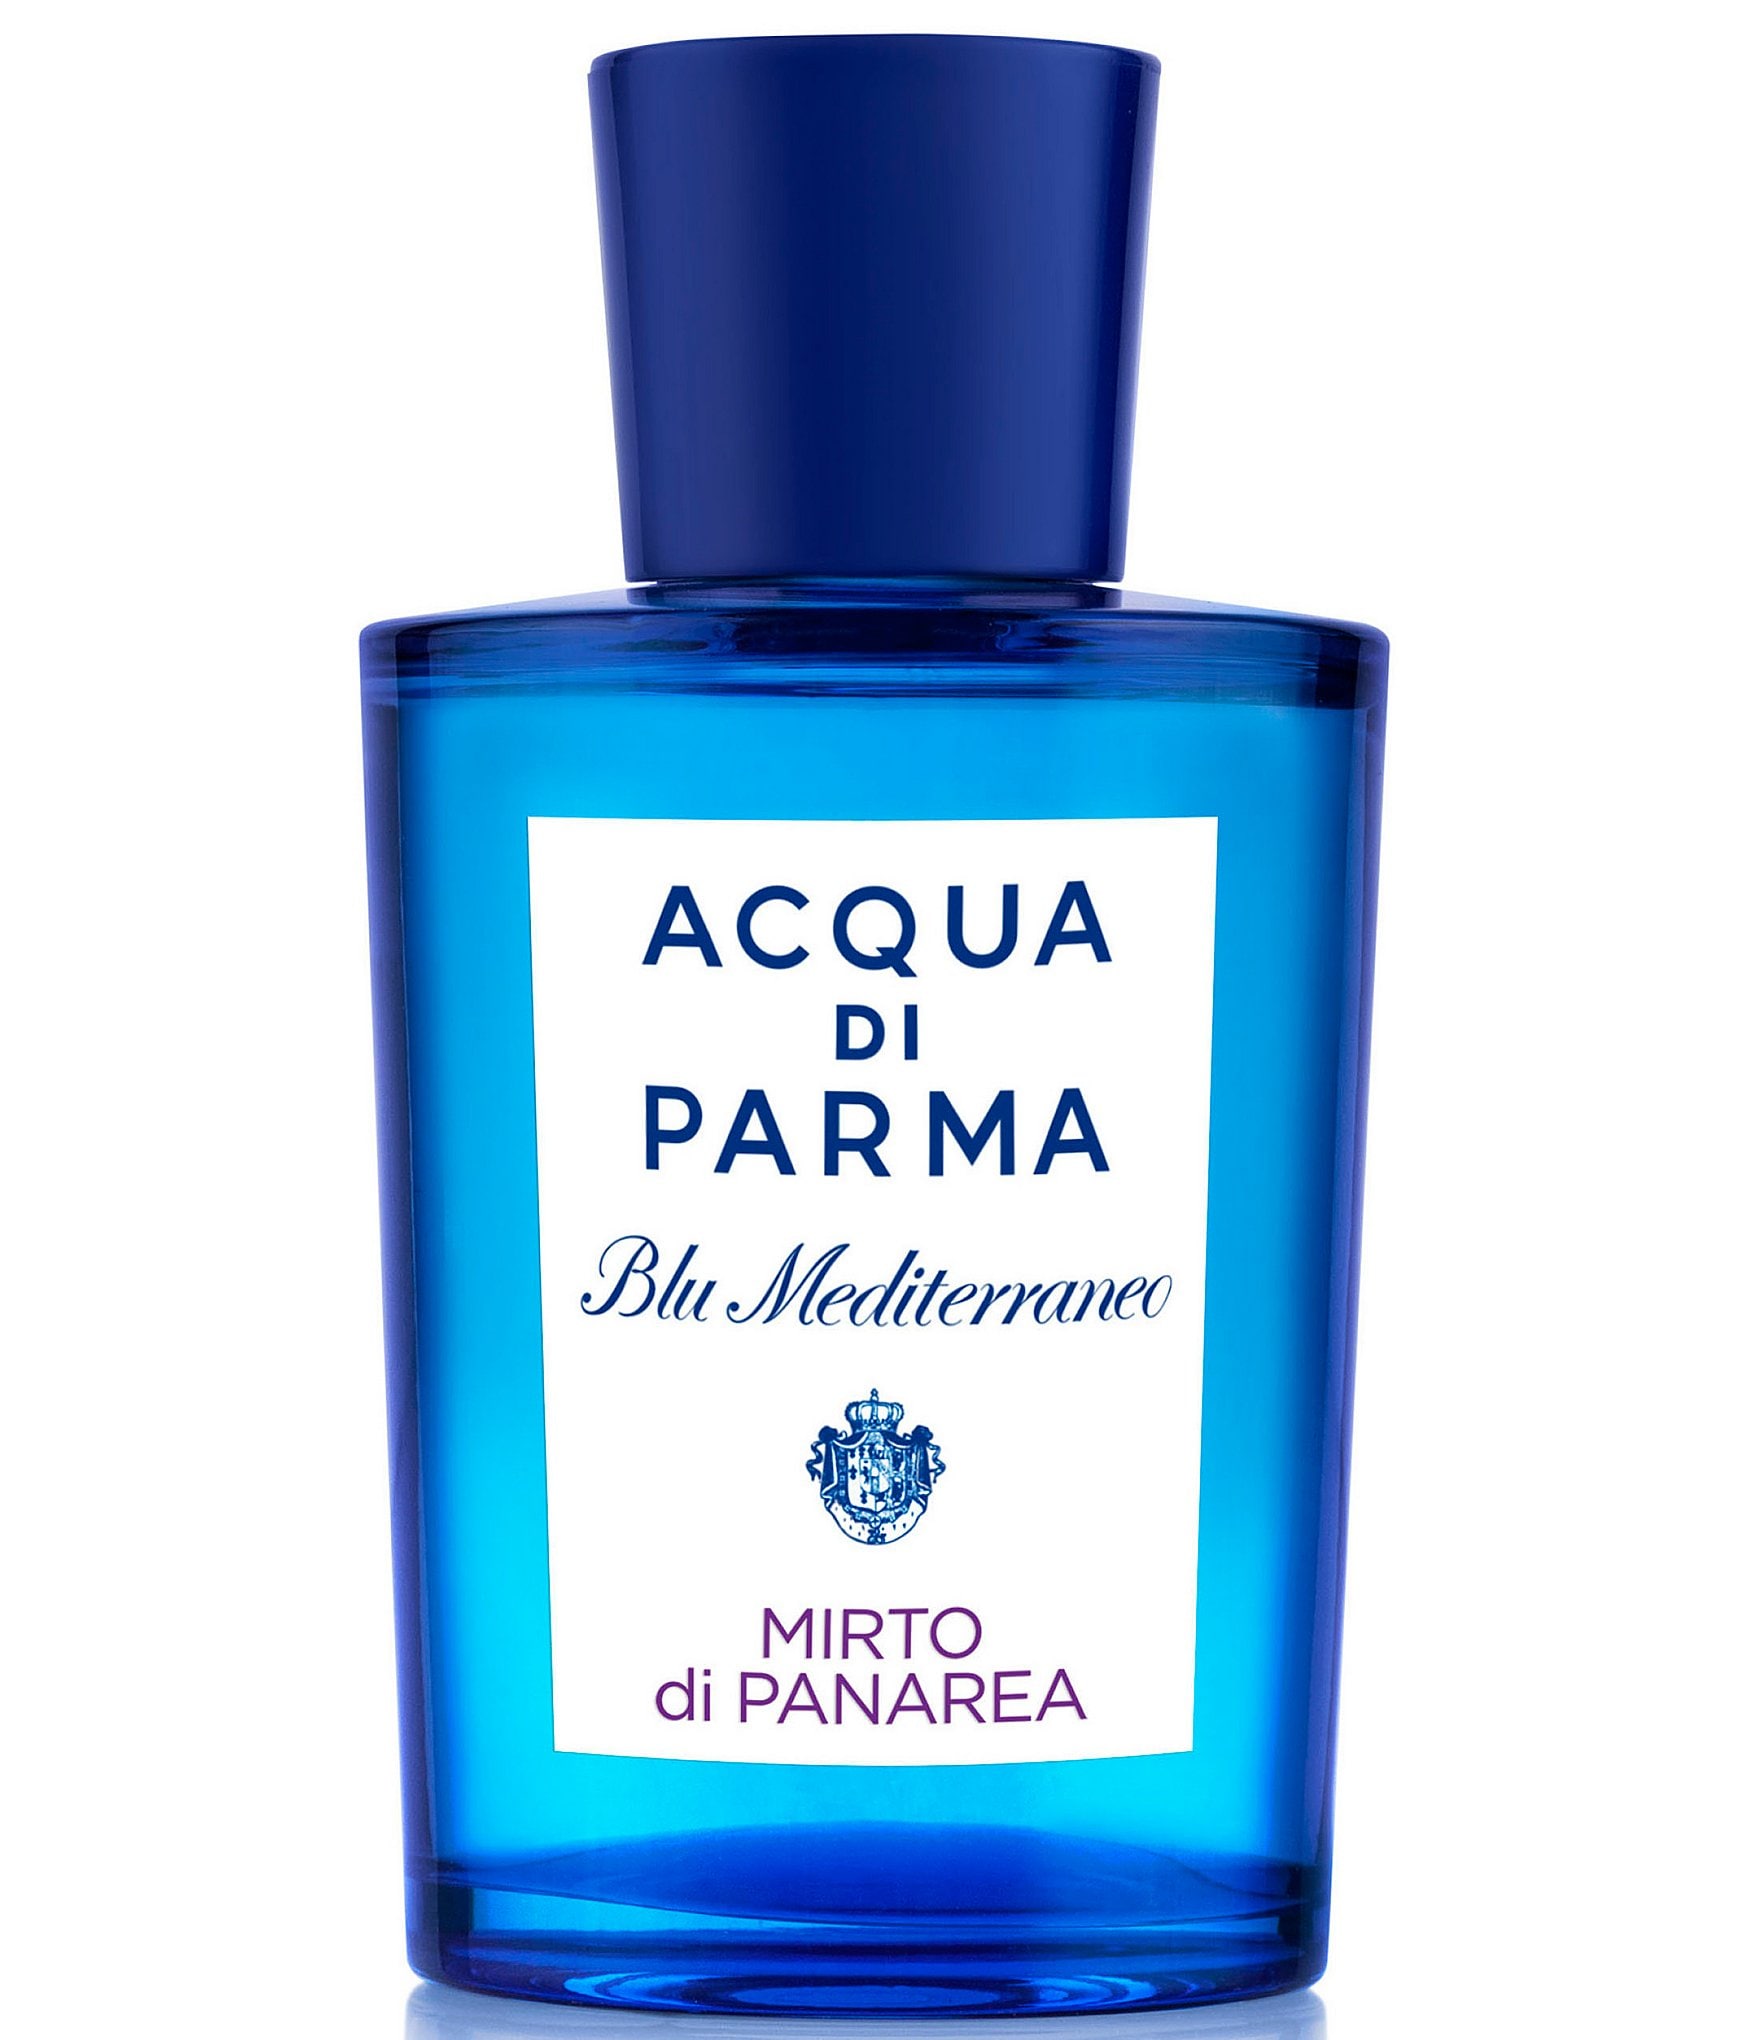 Acqua di Parma Blu Mediterraneo Mirto di Panarea